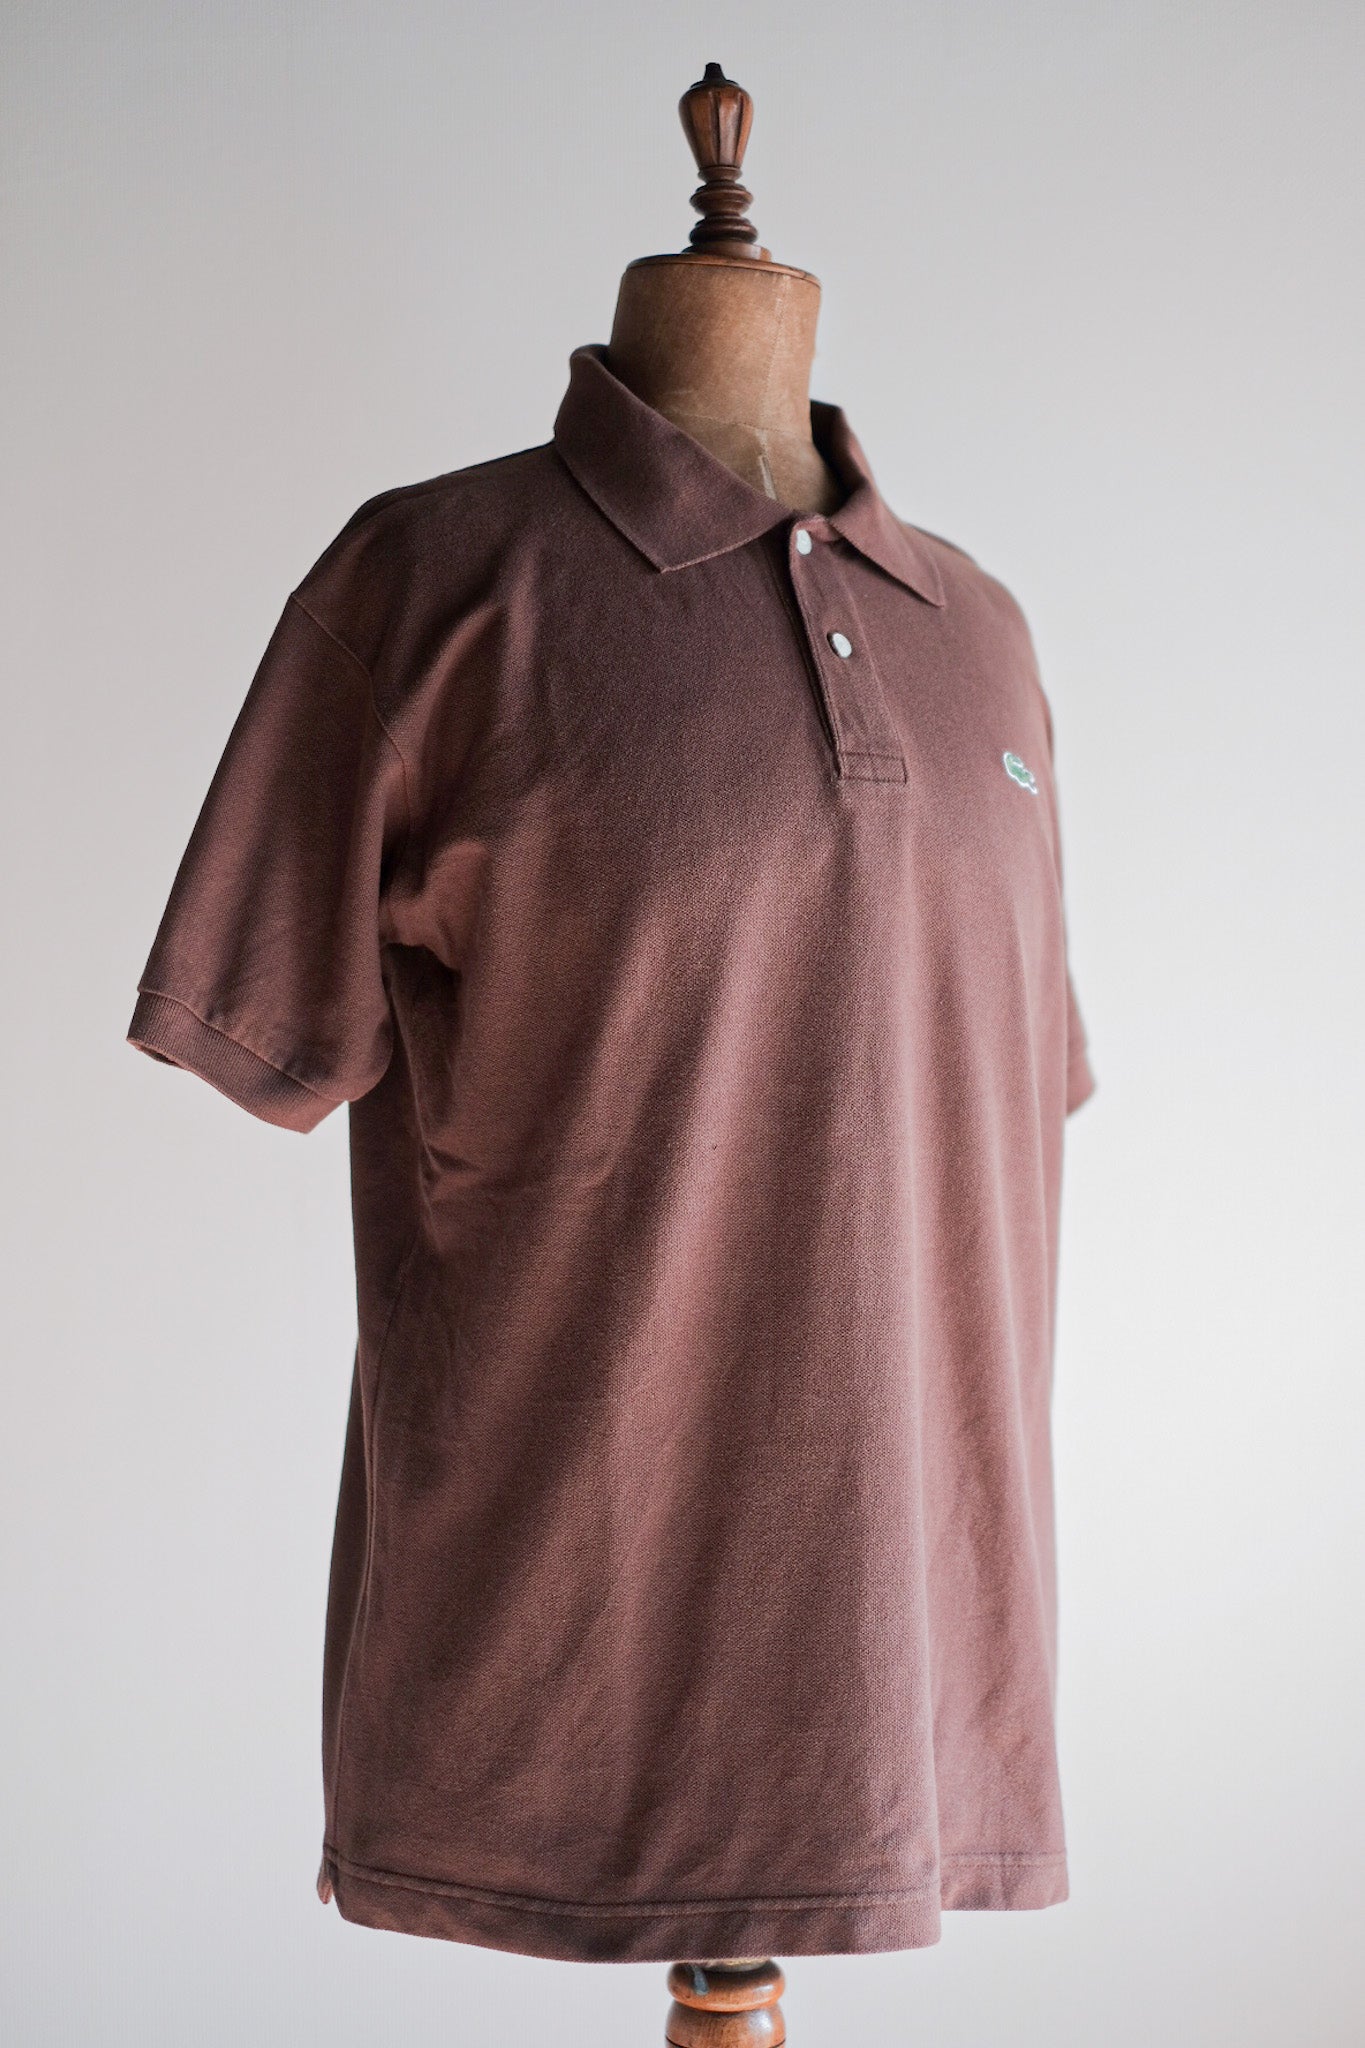 [~ 80 년대] Chemise lacoste s/s 폴로 셔츠 크기 .6 "Brown"